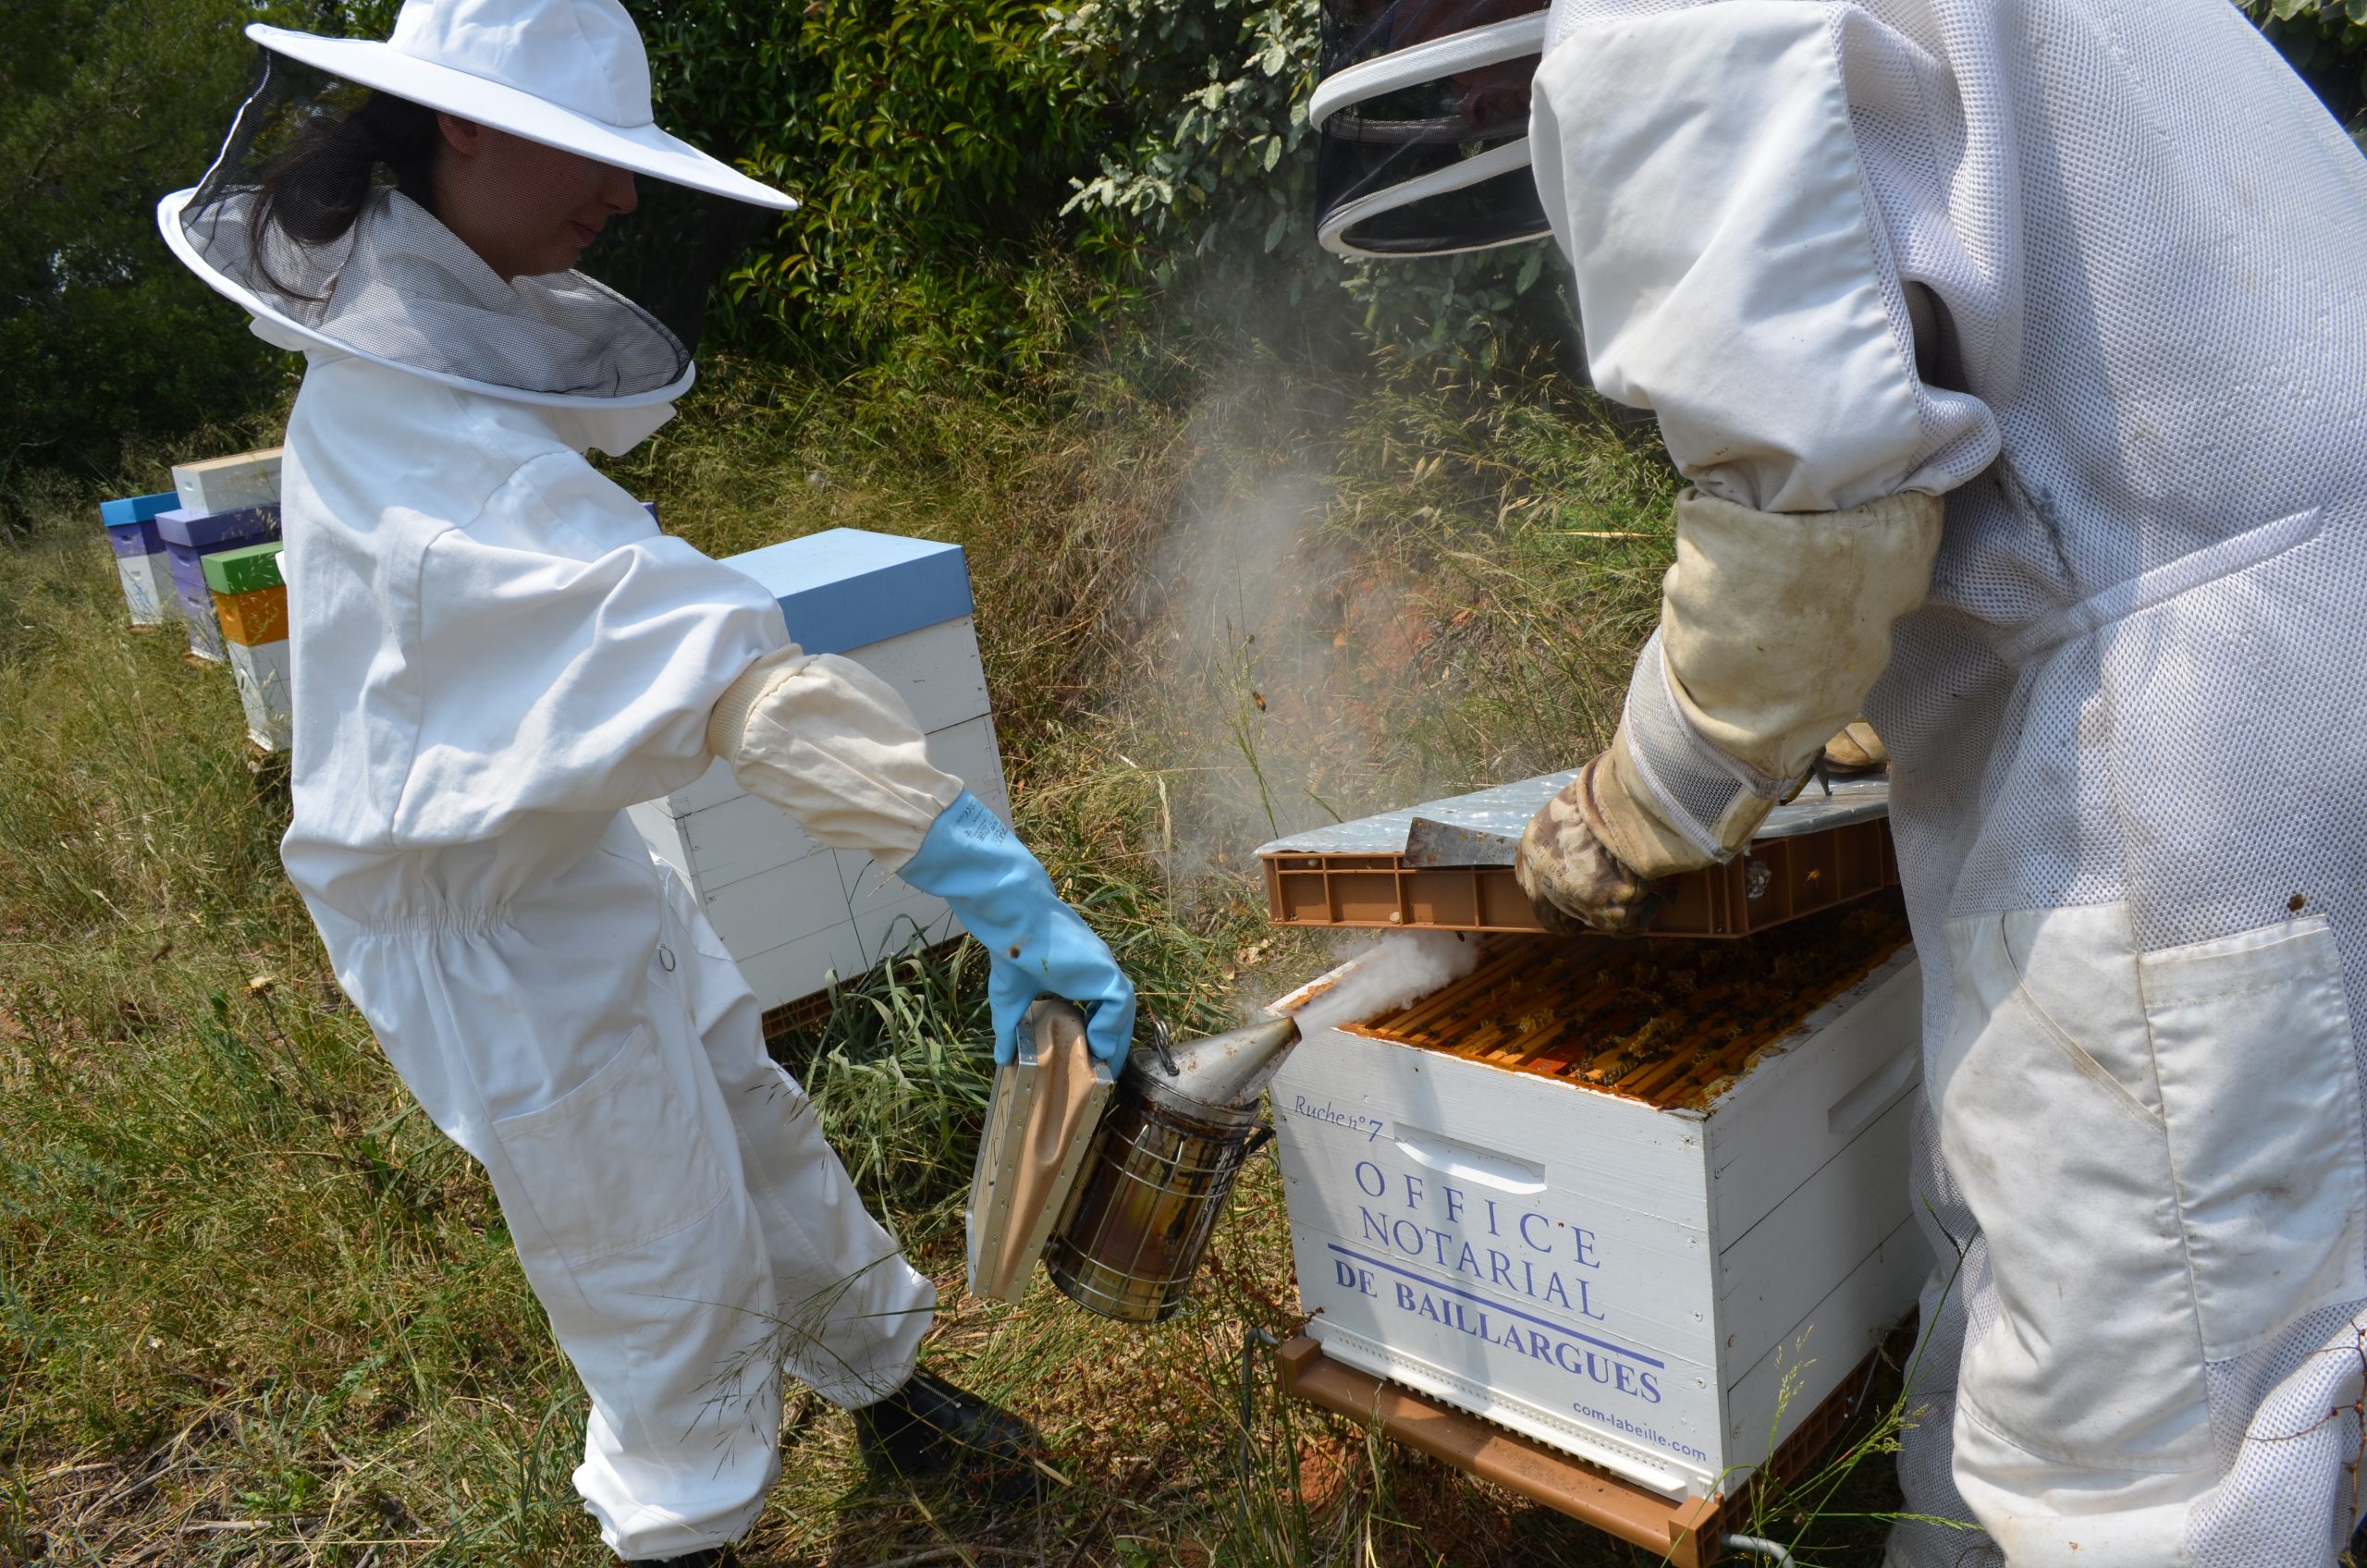 Visite des Apiculteurs des ruches de l'entreprise Office Notarial de Baillargues